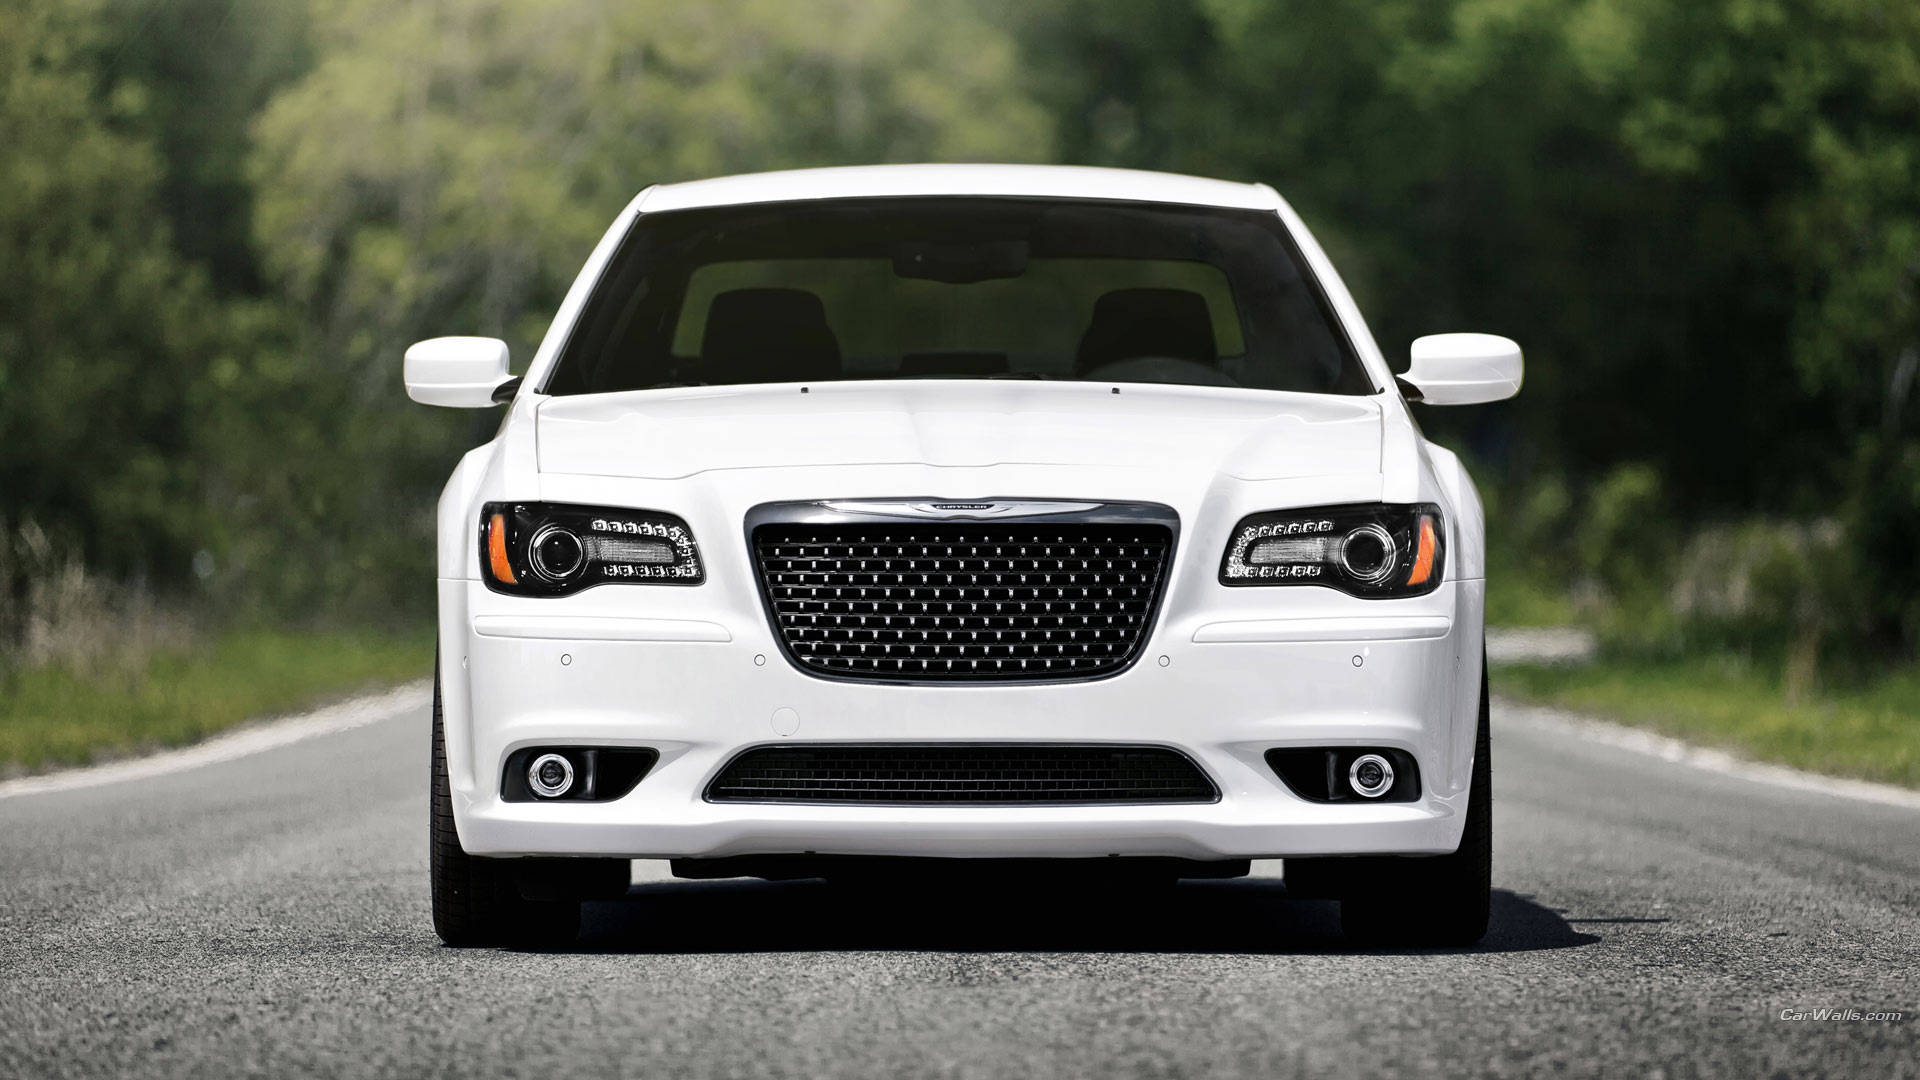 White Chrysler Vehicle Background